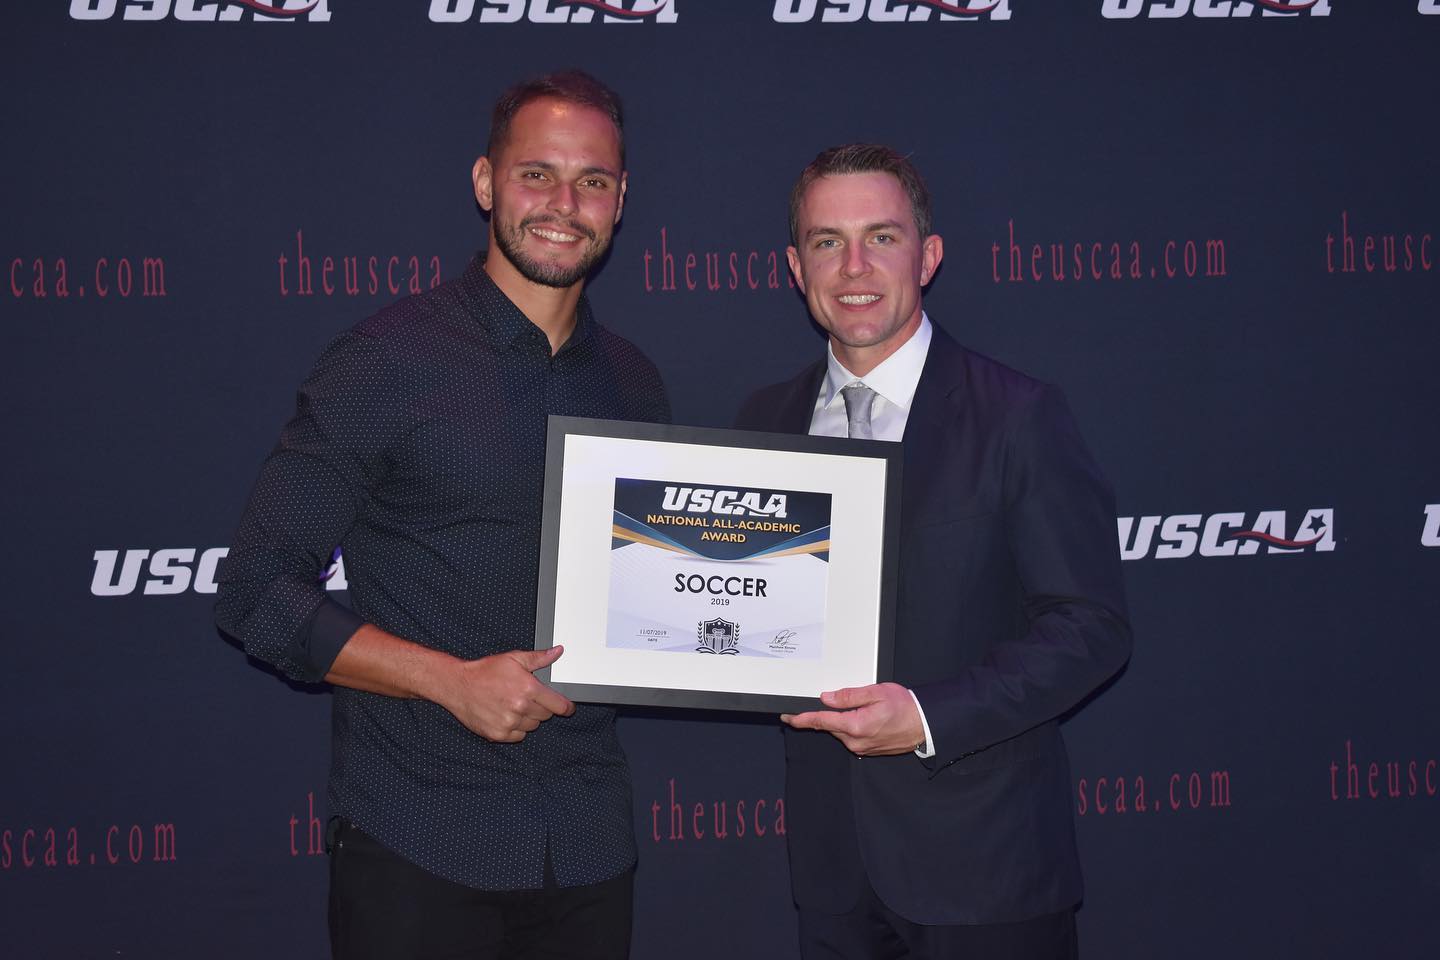 men's soccer player Rodrigo Festuccia receiving the USCAA All-Academic Award